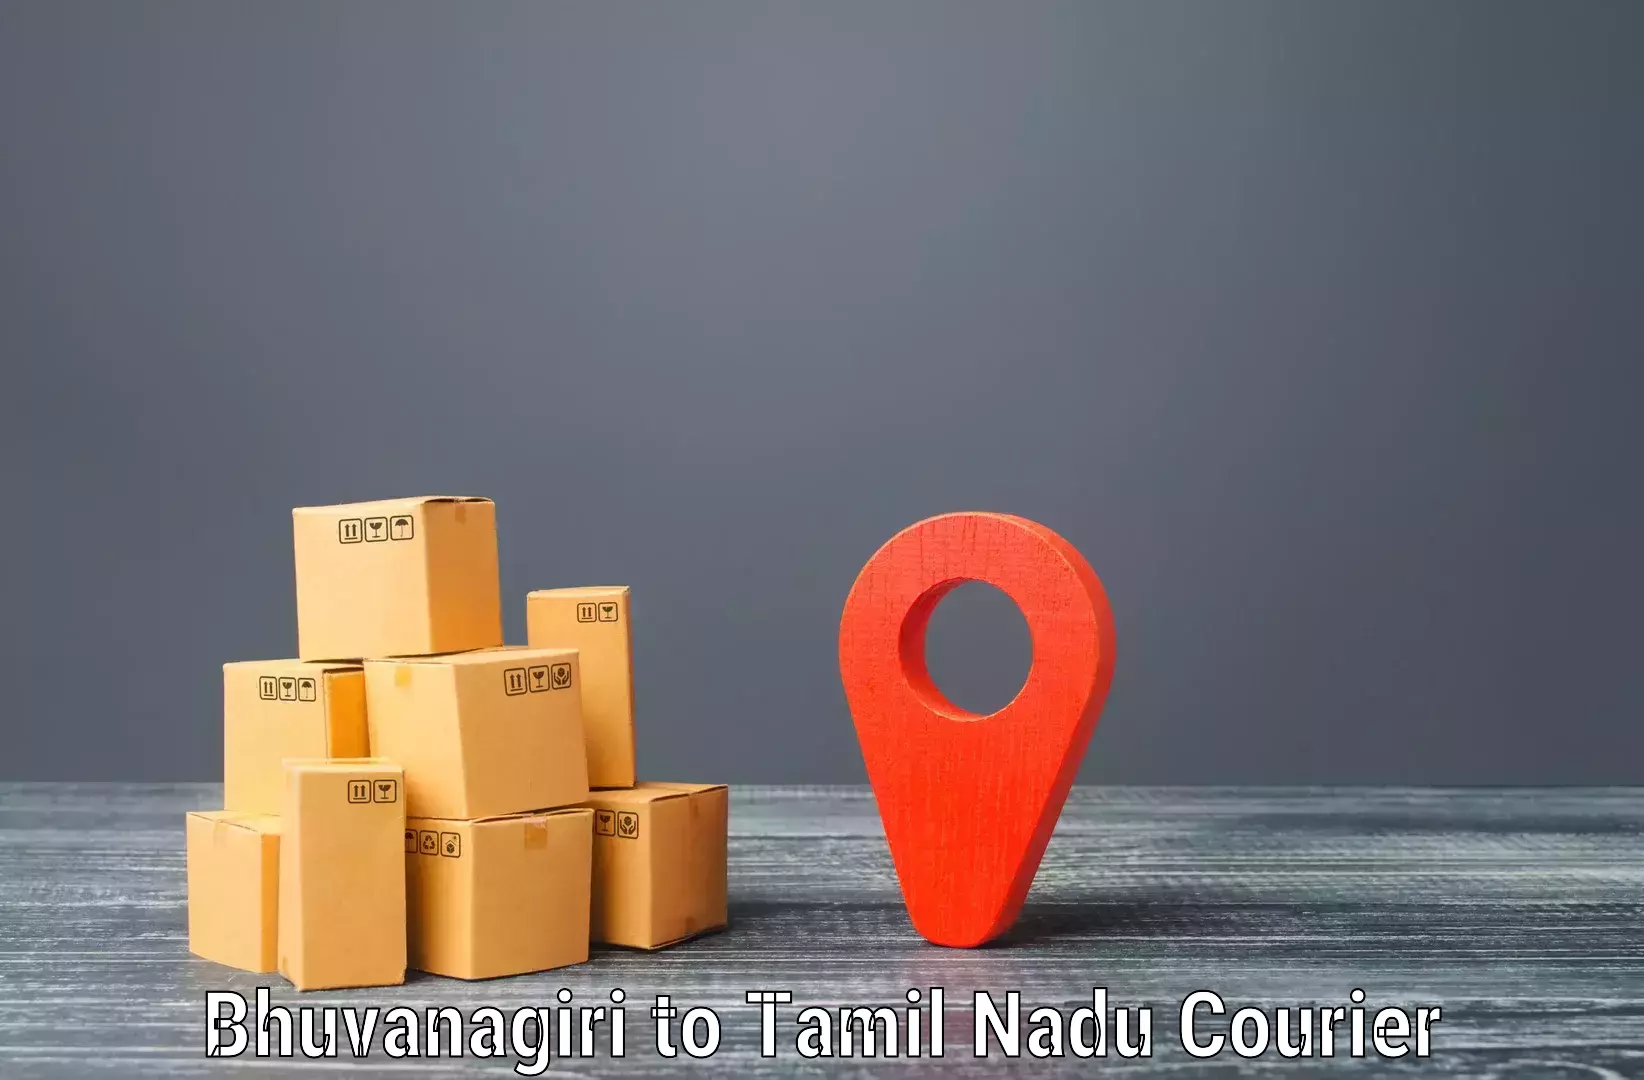 Courier insurance in Bhuvanagiri to Thoppur